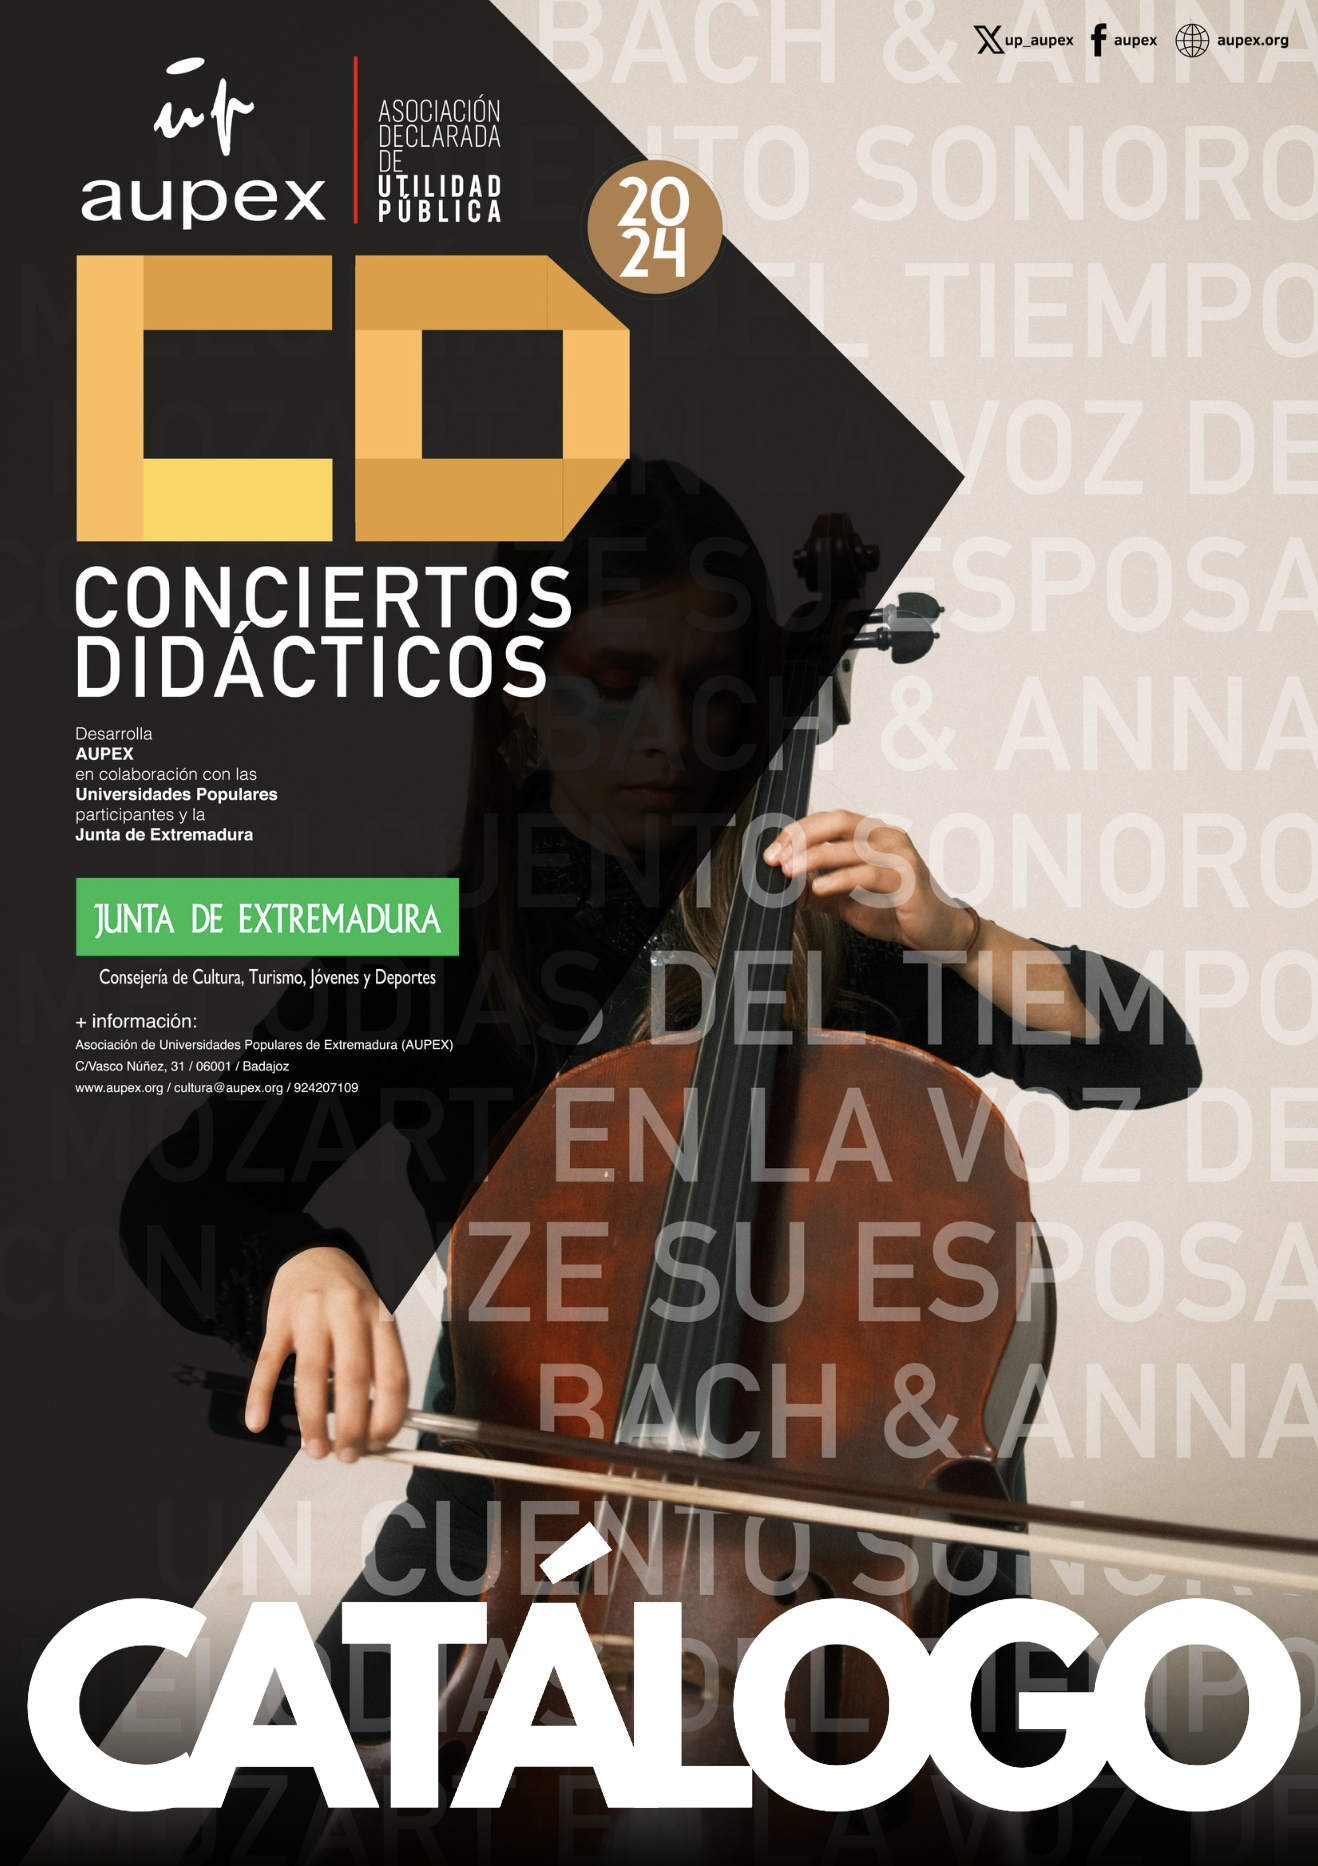 Catálogo Conciertos didácticos